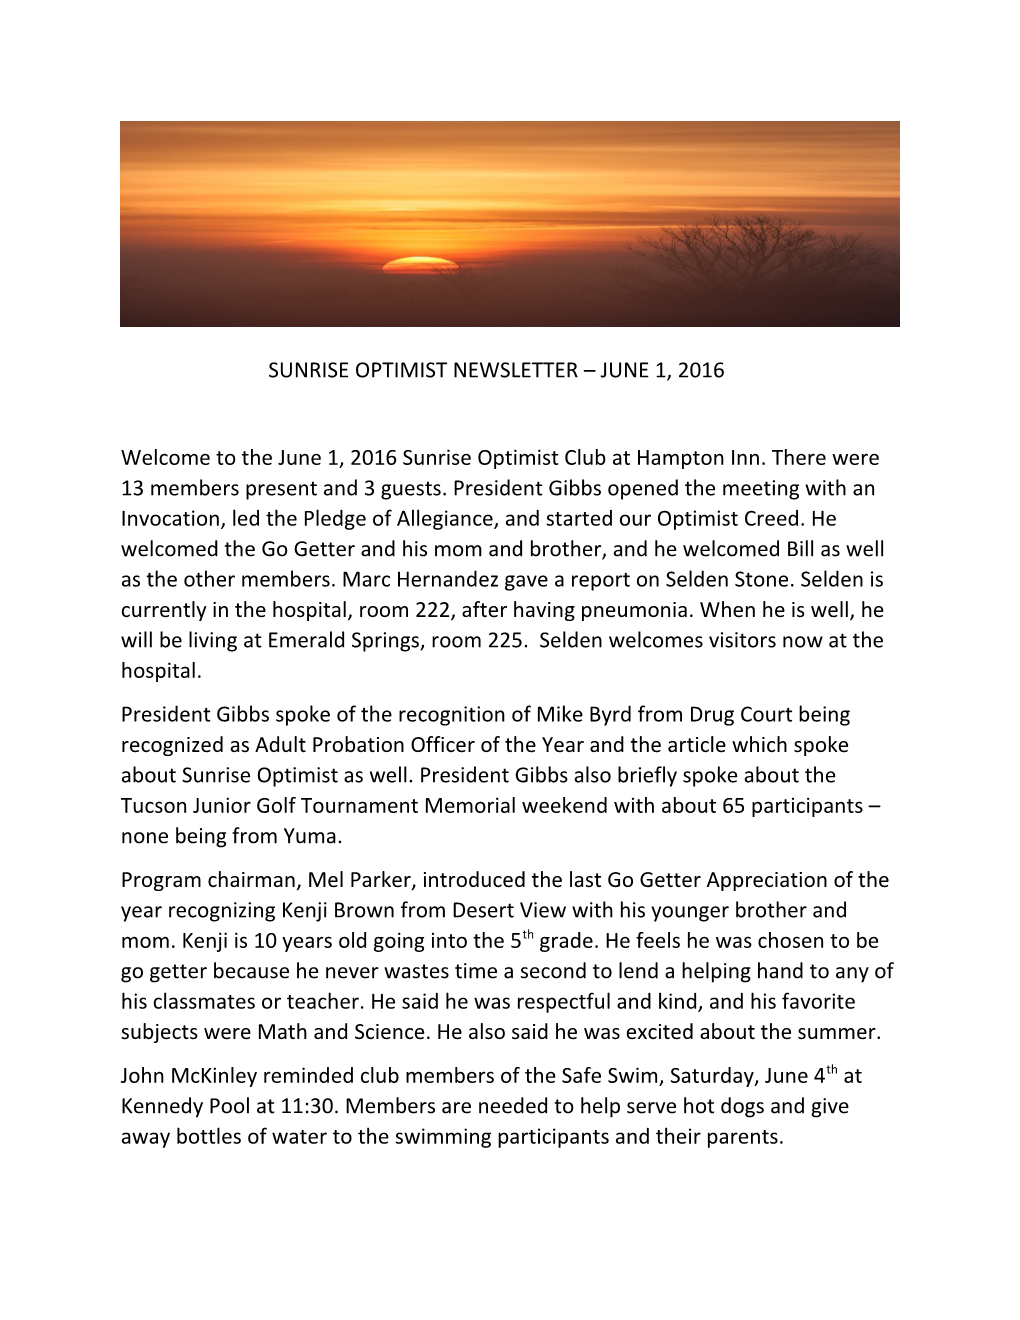 Sunrise Optimist Newsletter June 1, 2016